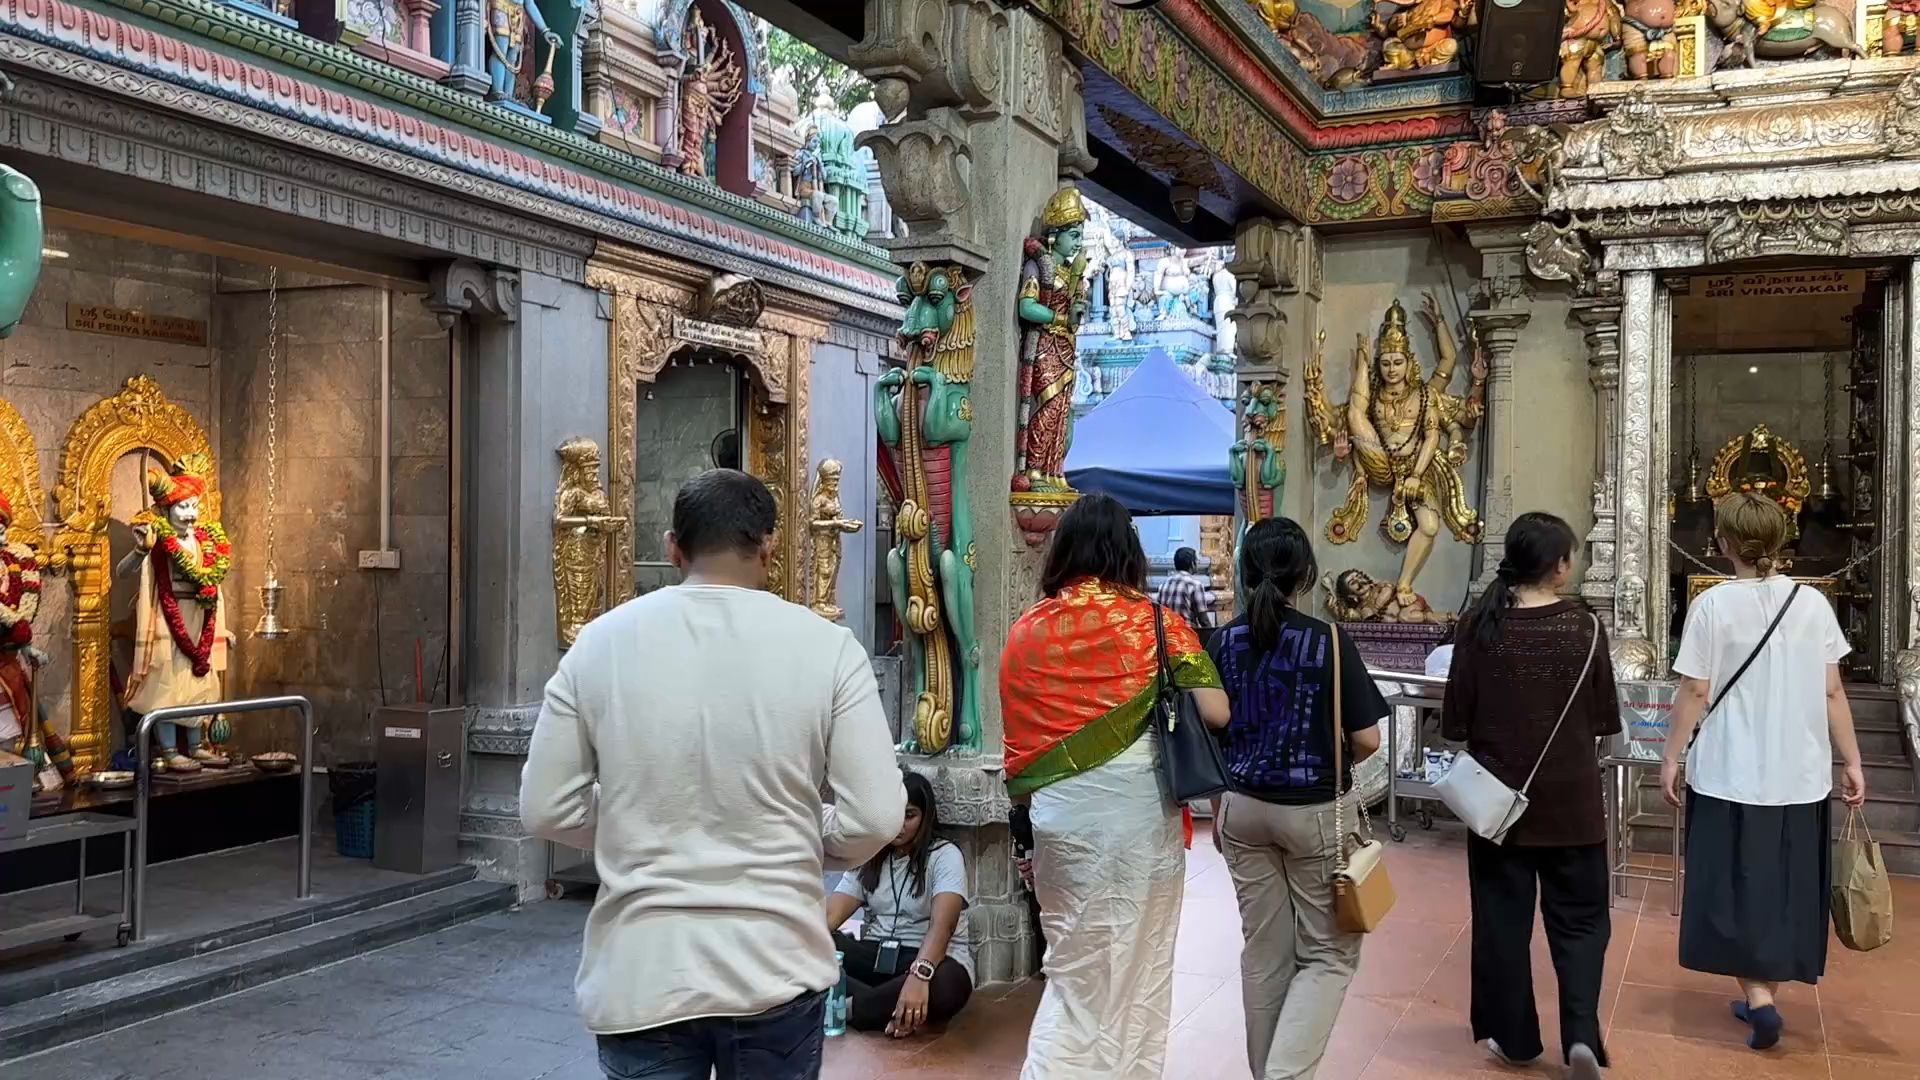 SRI Veeramakaliamman Temple, Little India